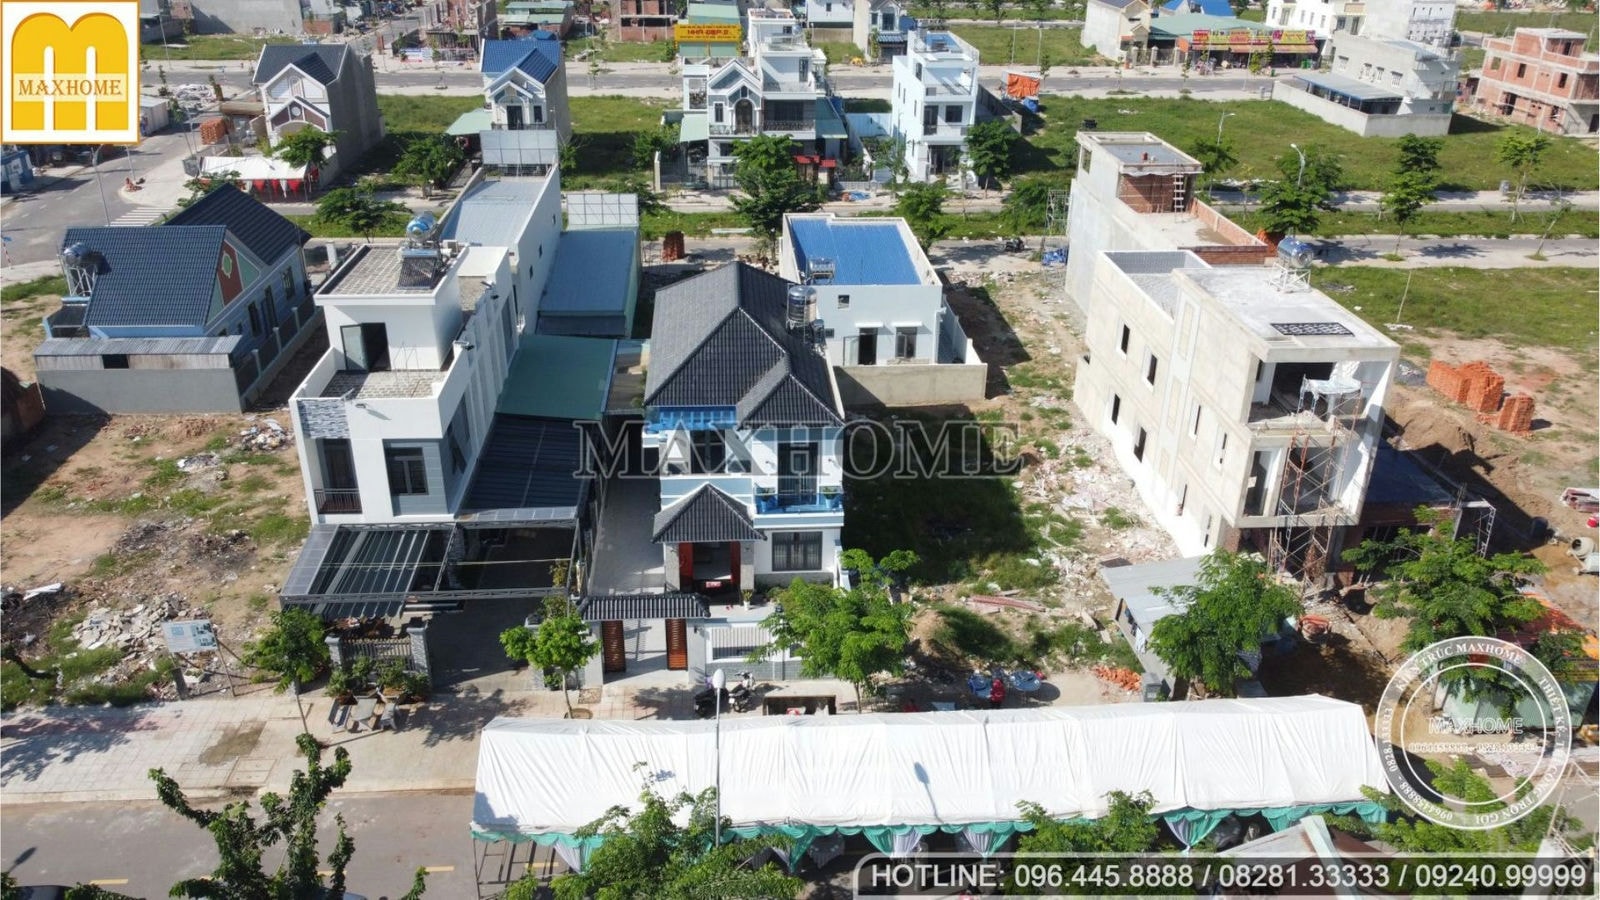 Trọn gói chỉ từ 1,4 tỷ cho mẫu nhà 2 tầng mái Nhật đẹp ở Đồng Nai